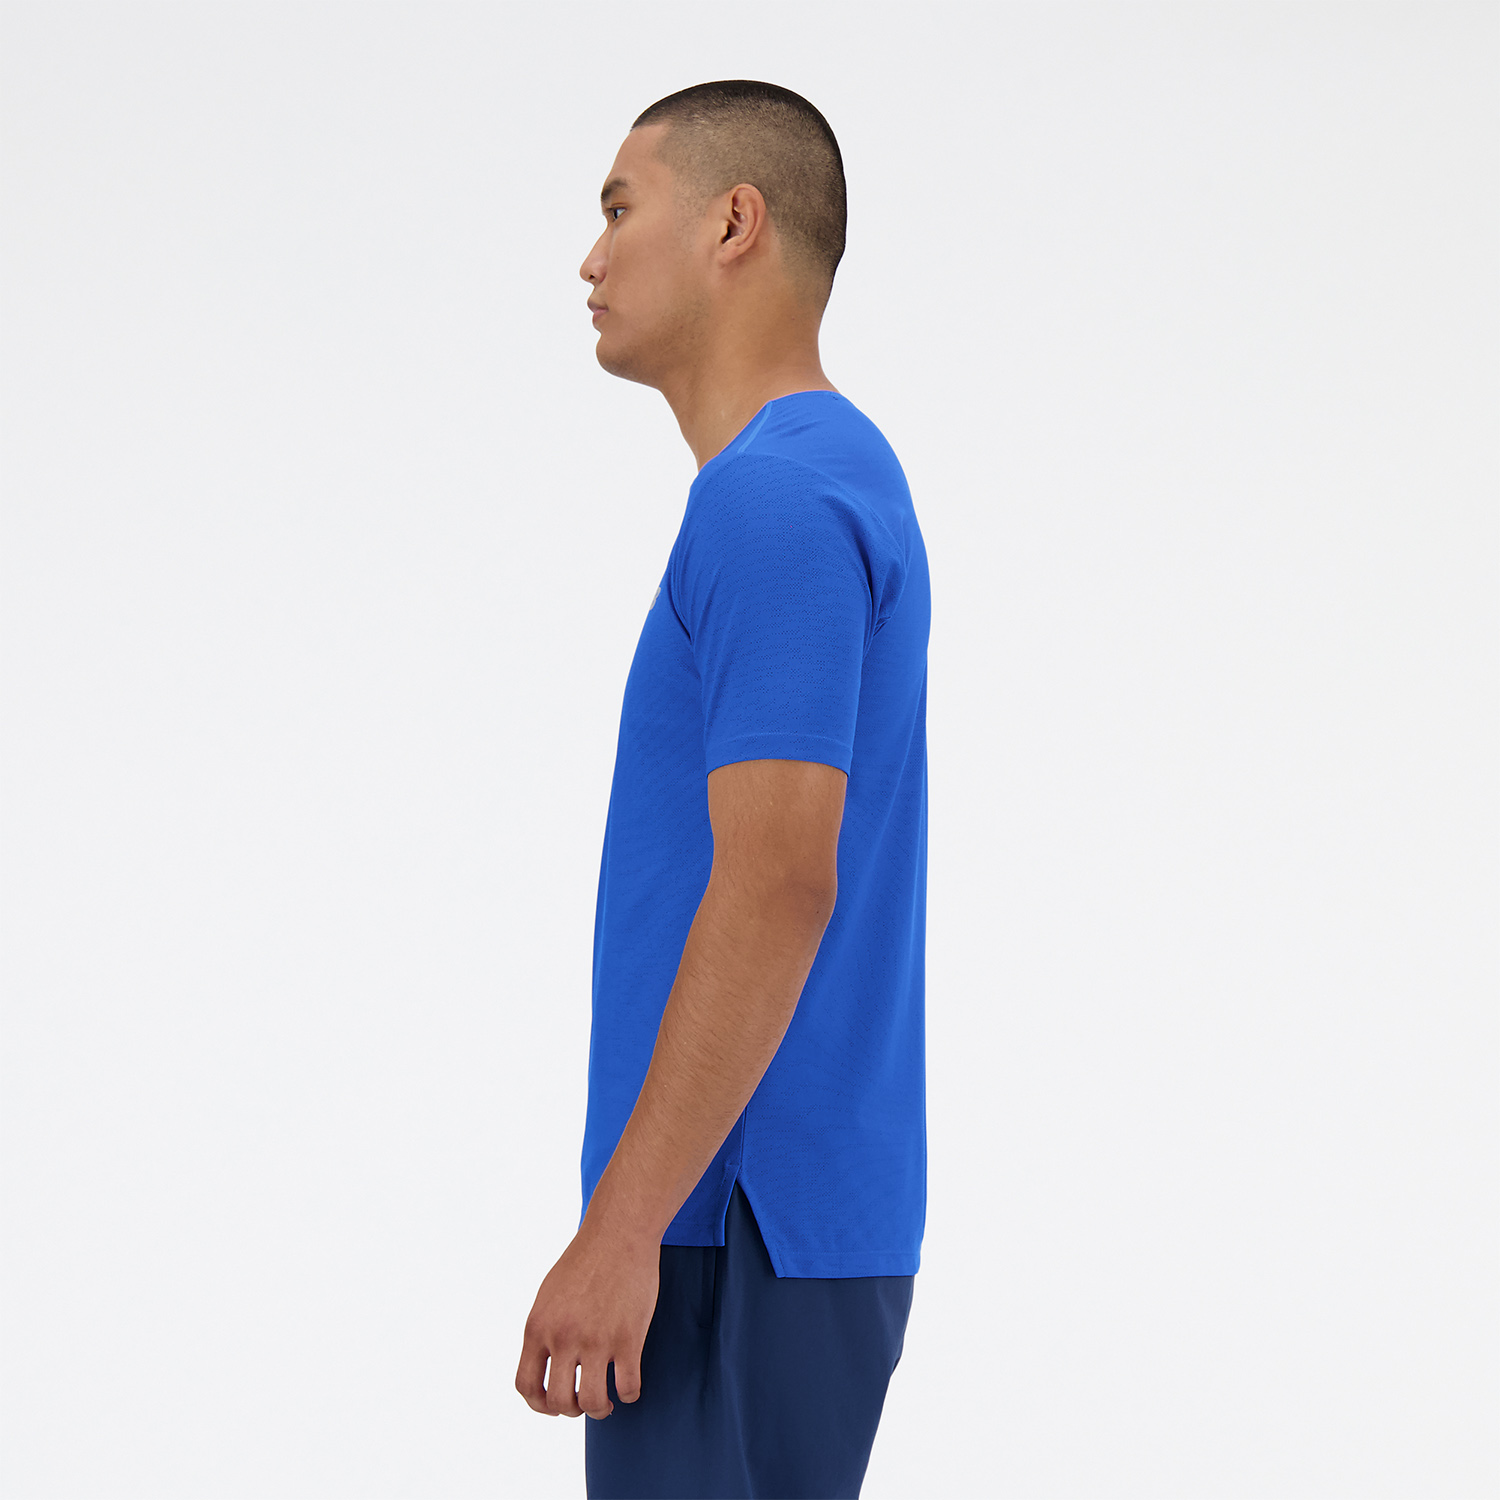 New Balance Athletics Camiseta - Blue Oasis